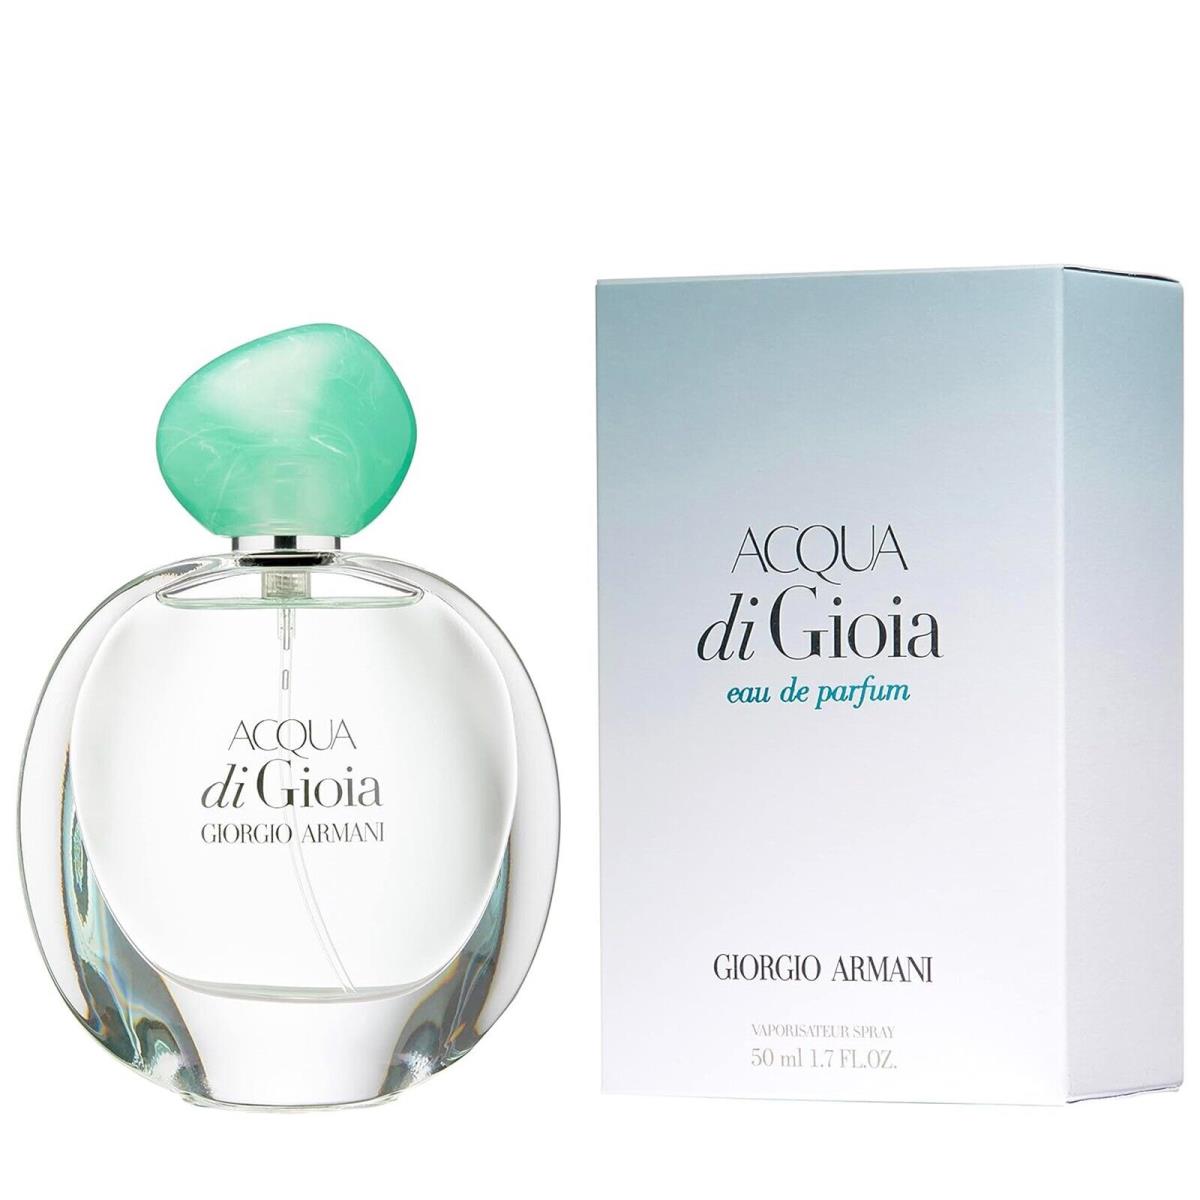 Acqua Di Gioia Perfume by Giorgio Armani Women Eau De Parfum Edp Spray 1.7 oz